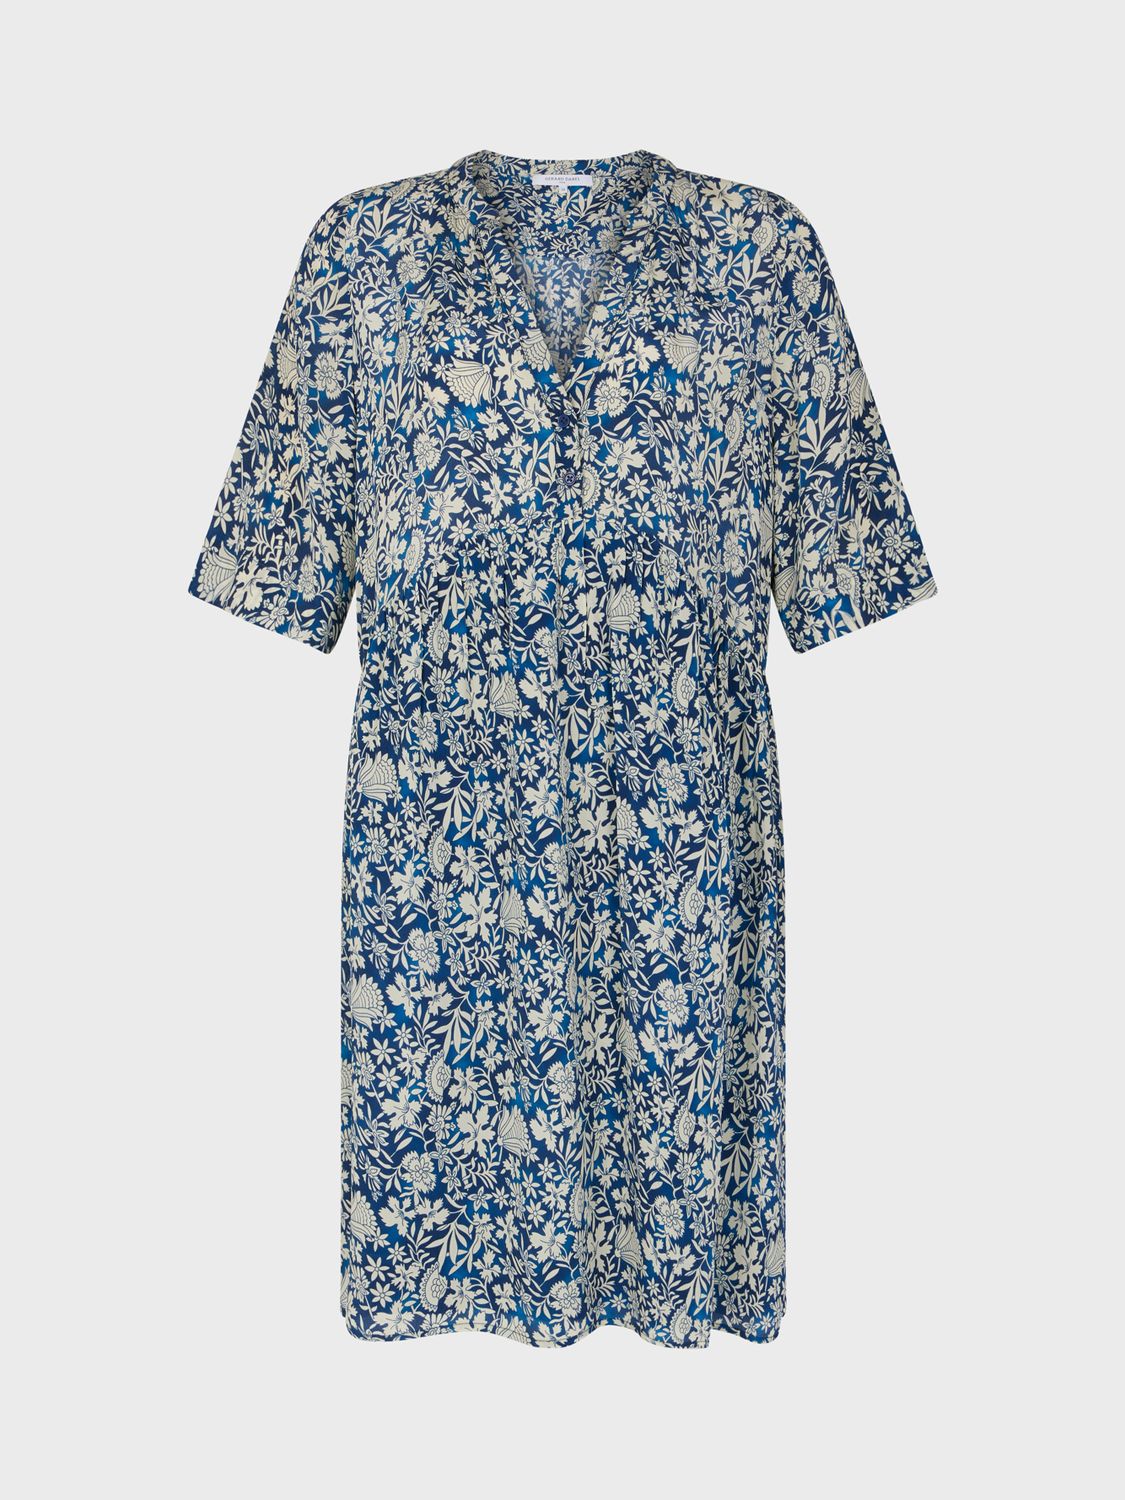 Gerard Darel Ellena Floral Print Mini Dress, Indigo, 10